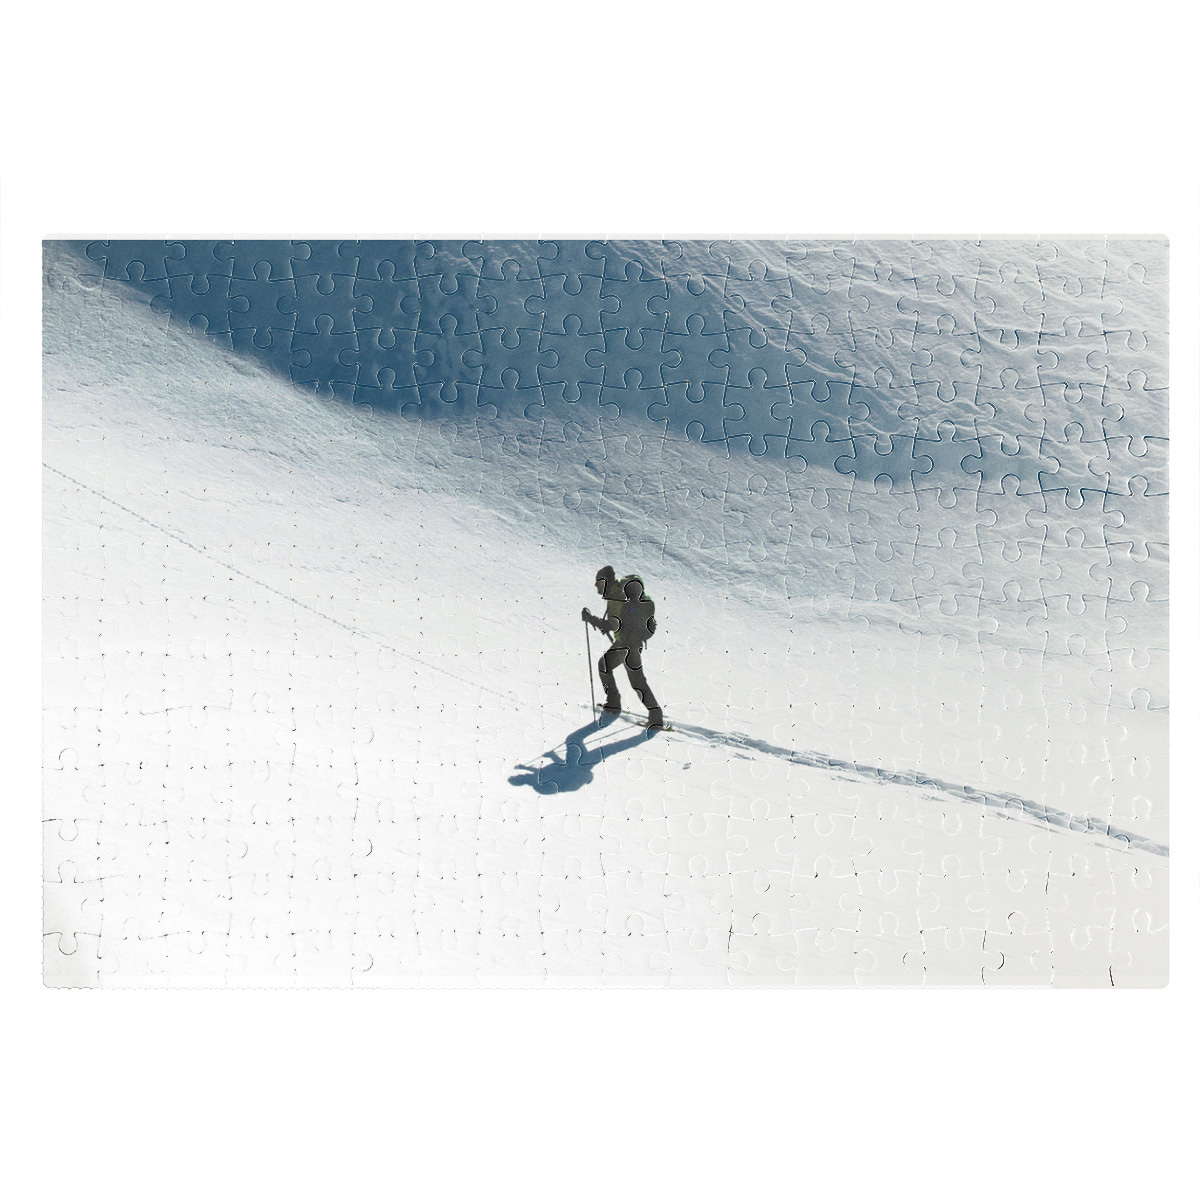 Лыжник шел на лыжах. Морис Манифика лыжник. Лыжные лыжные Quechua. Снег Лыжня. Центр подготовки лыжников Алдан.